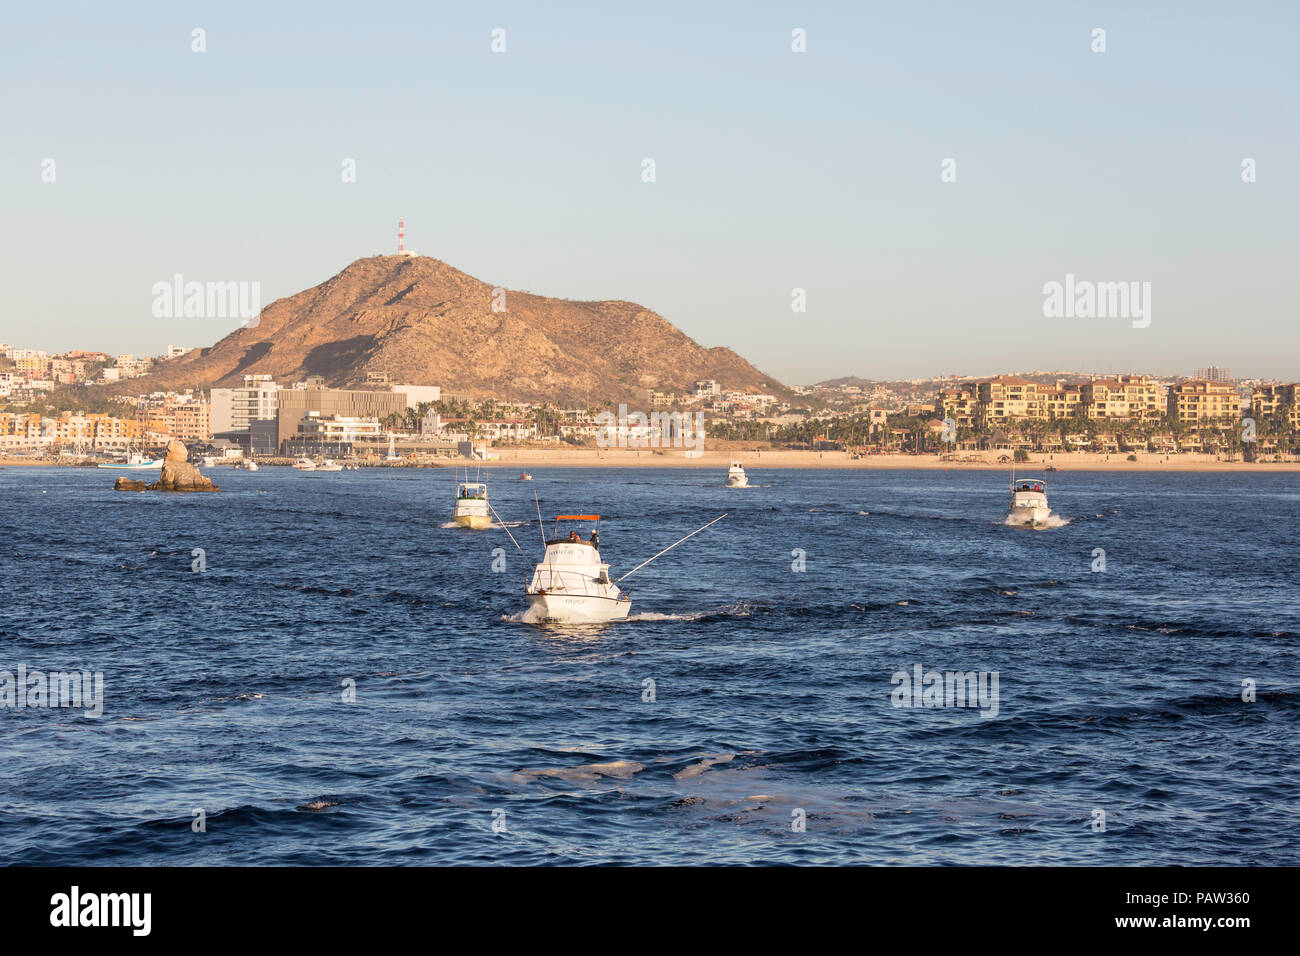 La flotte de pêche commerciale au début de quitter le port à Cabo San Lucas, Baja California Sur, au Mexique. Banque D'Images